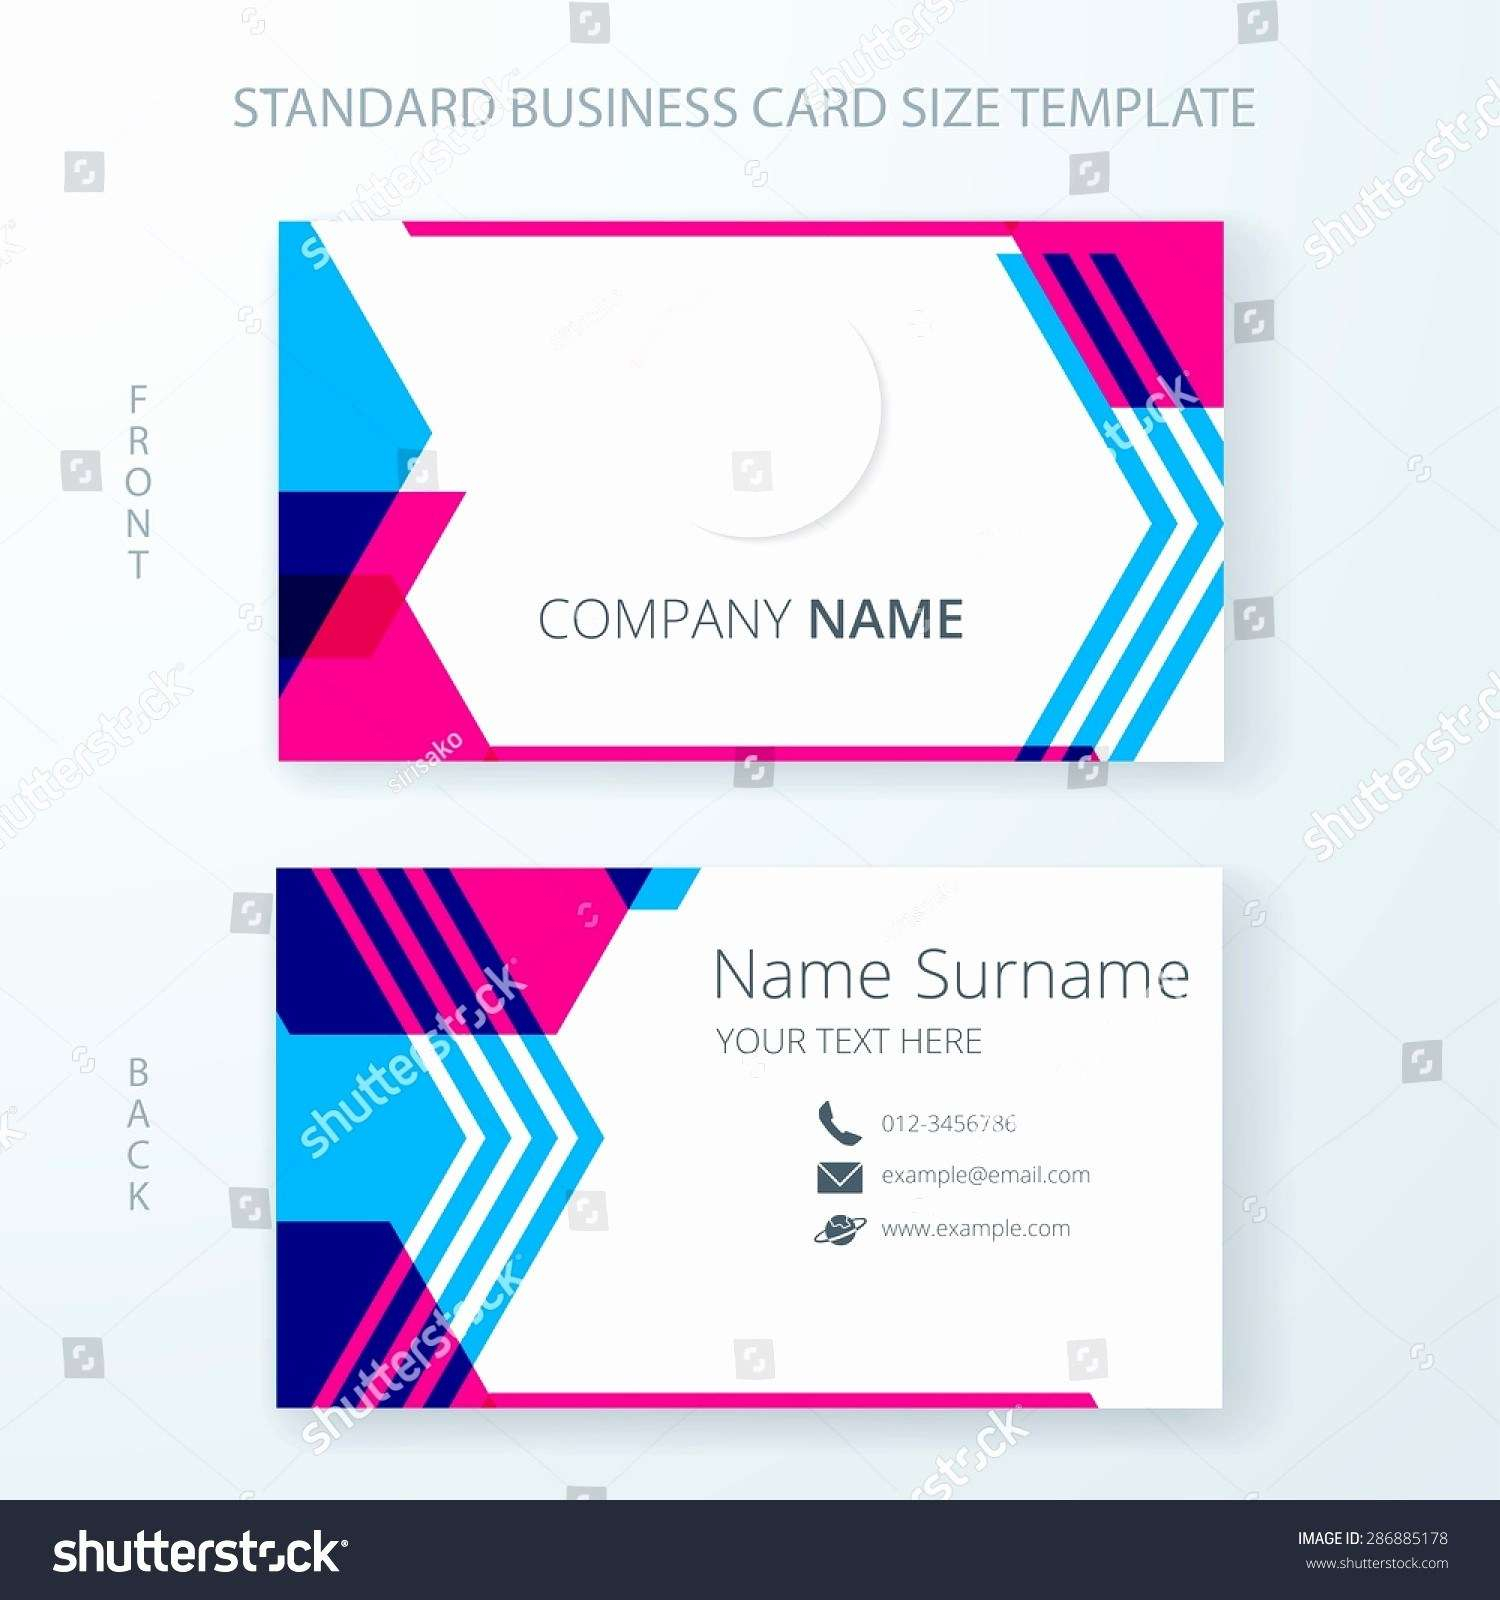 Gartner Business Cards Template Best Of Gartner Business Regarding Gartner Business Cards Template